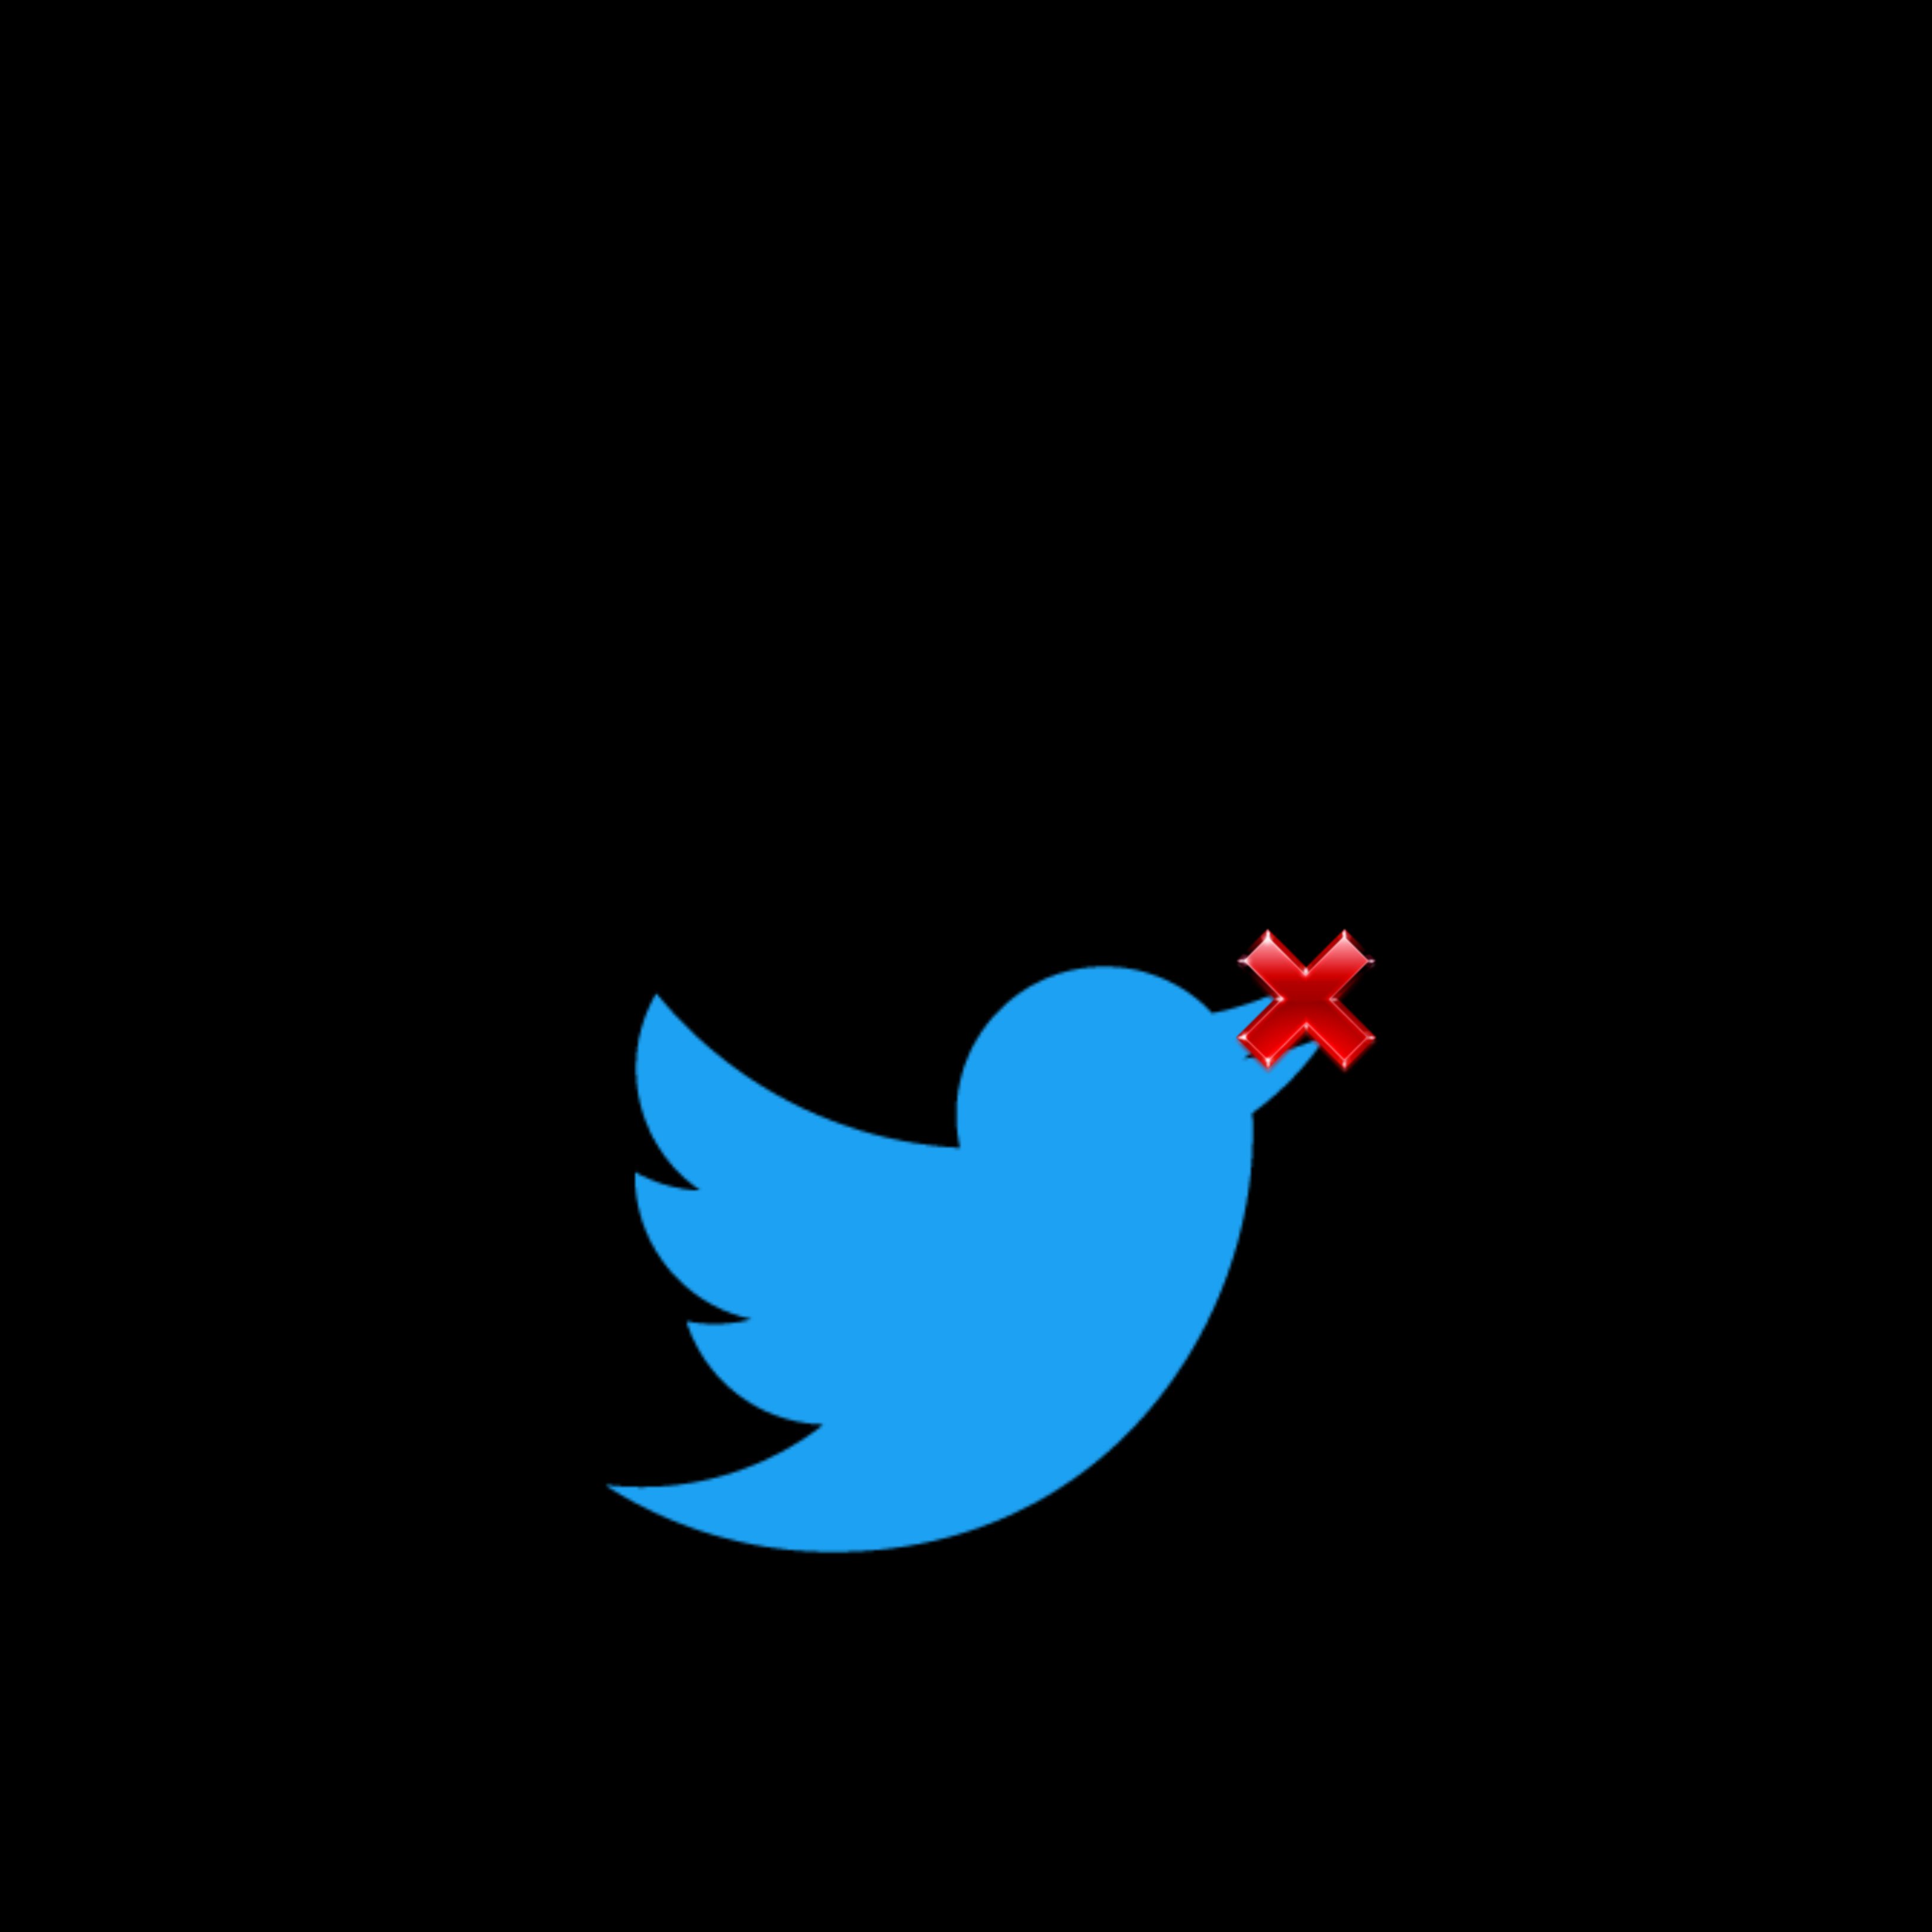 Twitter extiende los casos de censura por incitar al odio